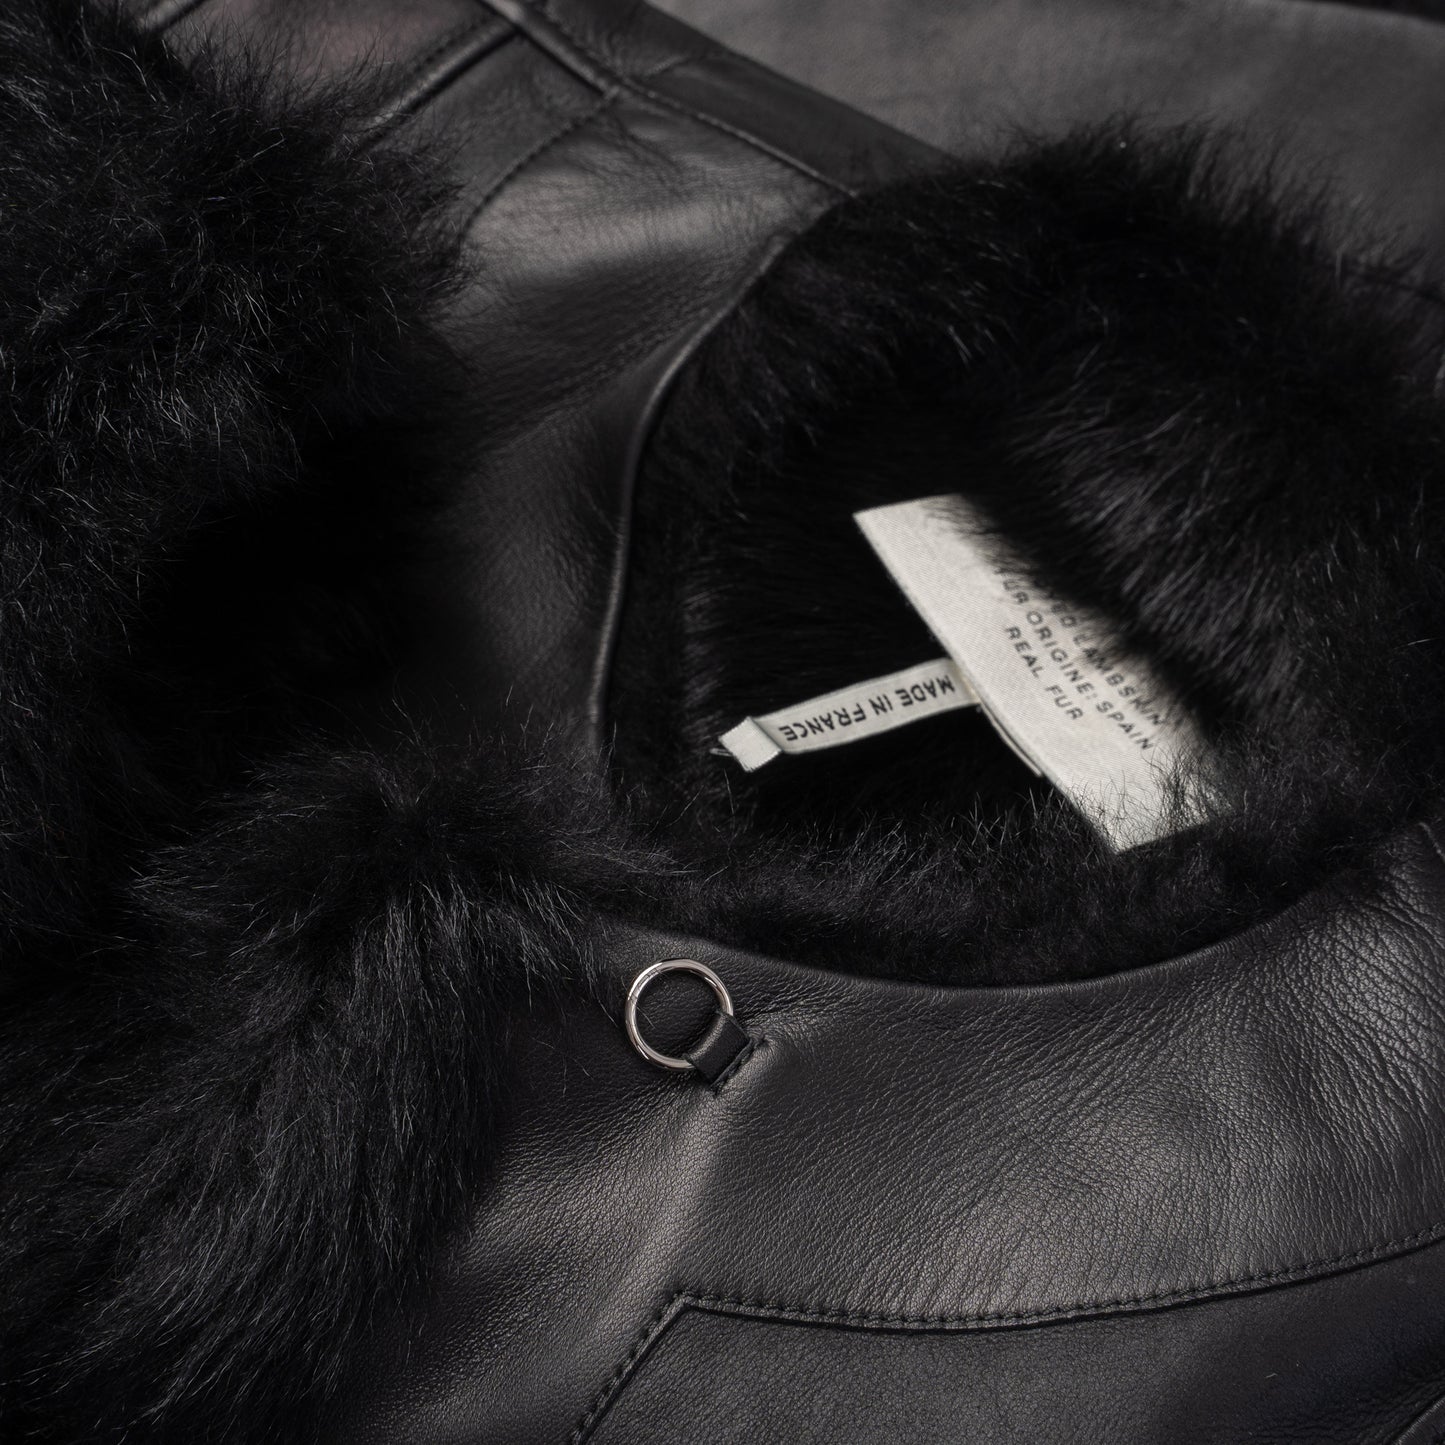 Fur Trimmed Leather Jacket